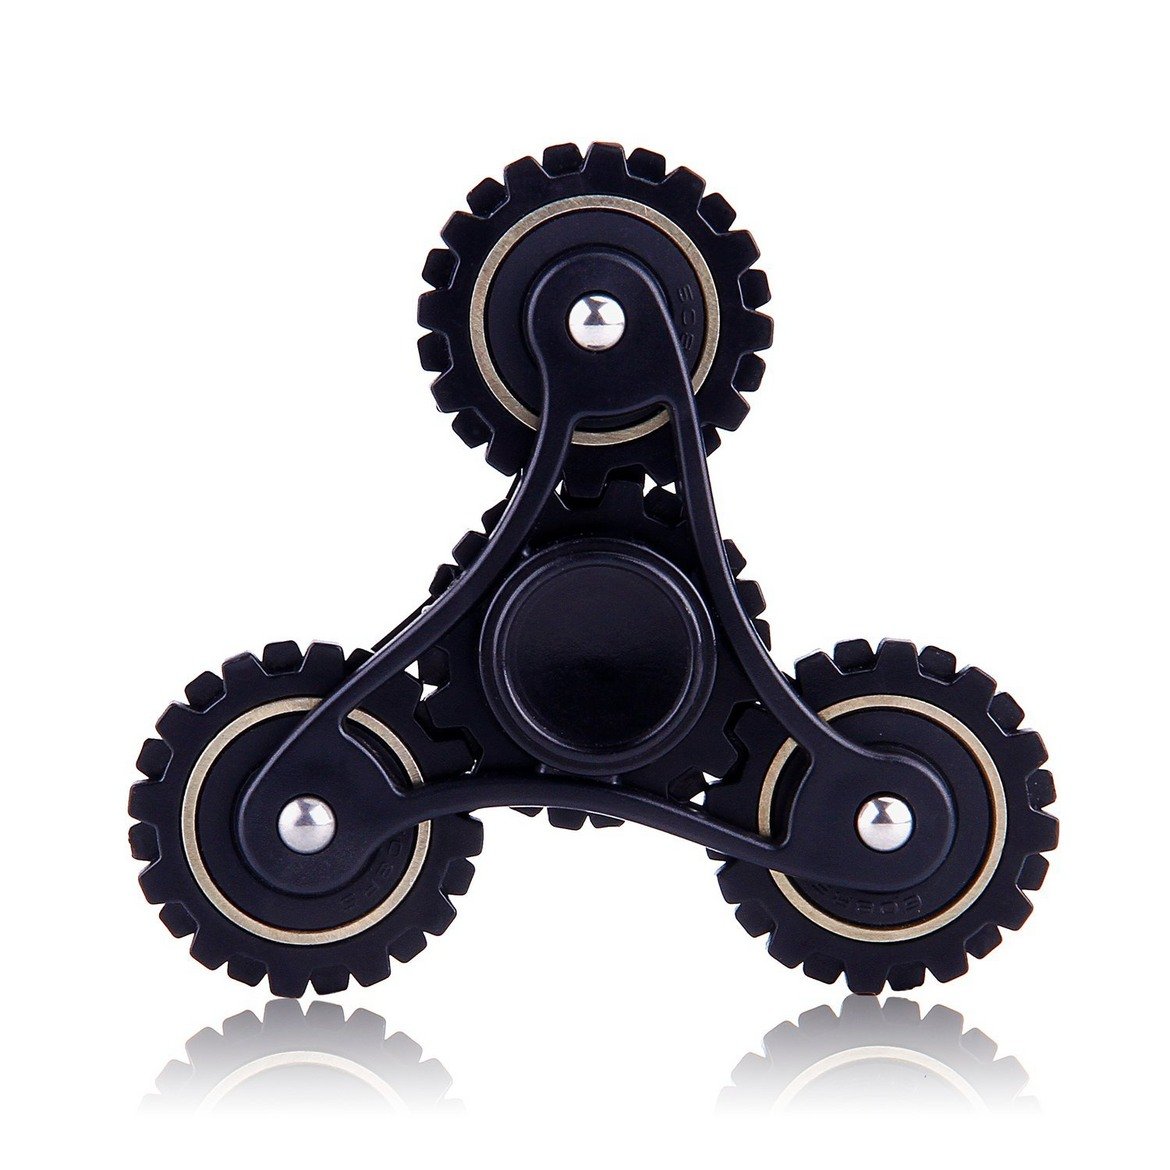 Спинър със зъбчати колела, решен в черно и металик - нелоша алтернатива на играчките, като струва 13 долара. 